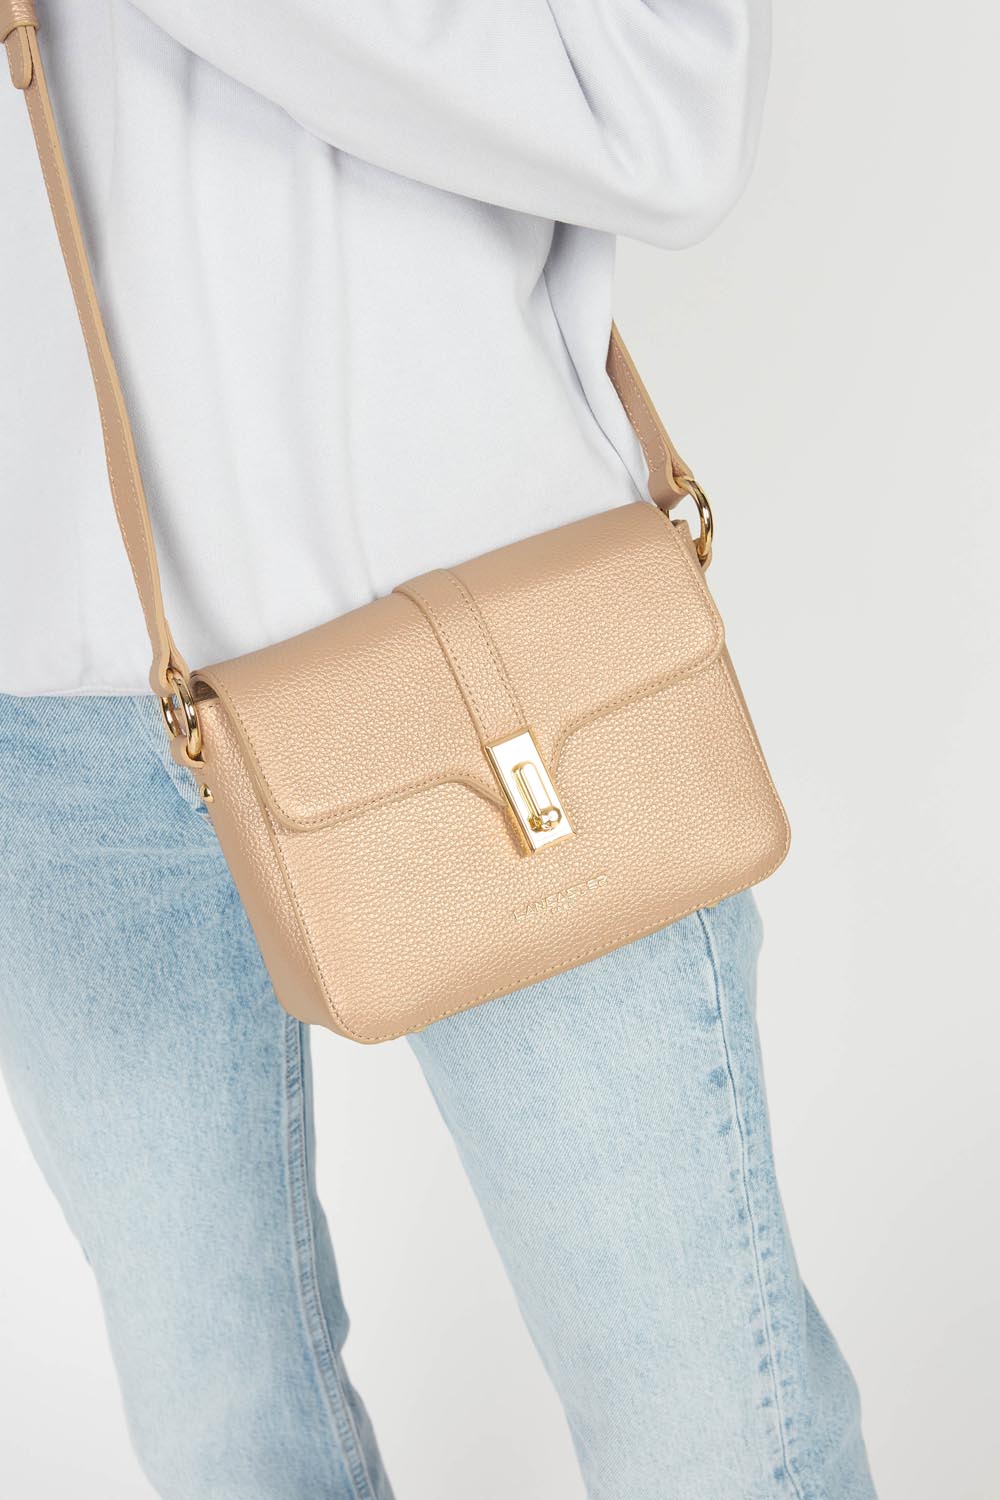 small crossbody bag - foulonné milano #couleur_beige-fonc